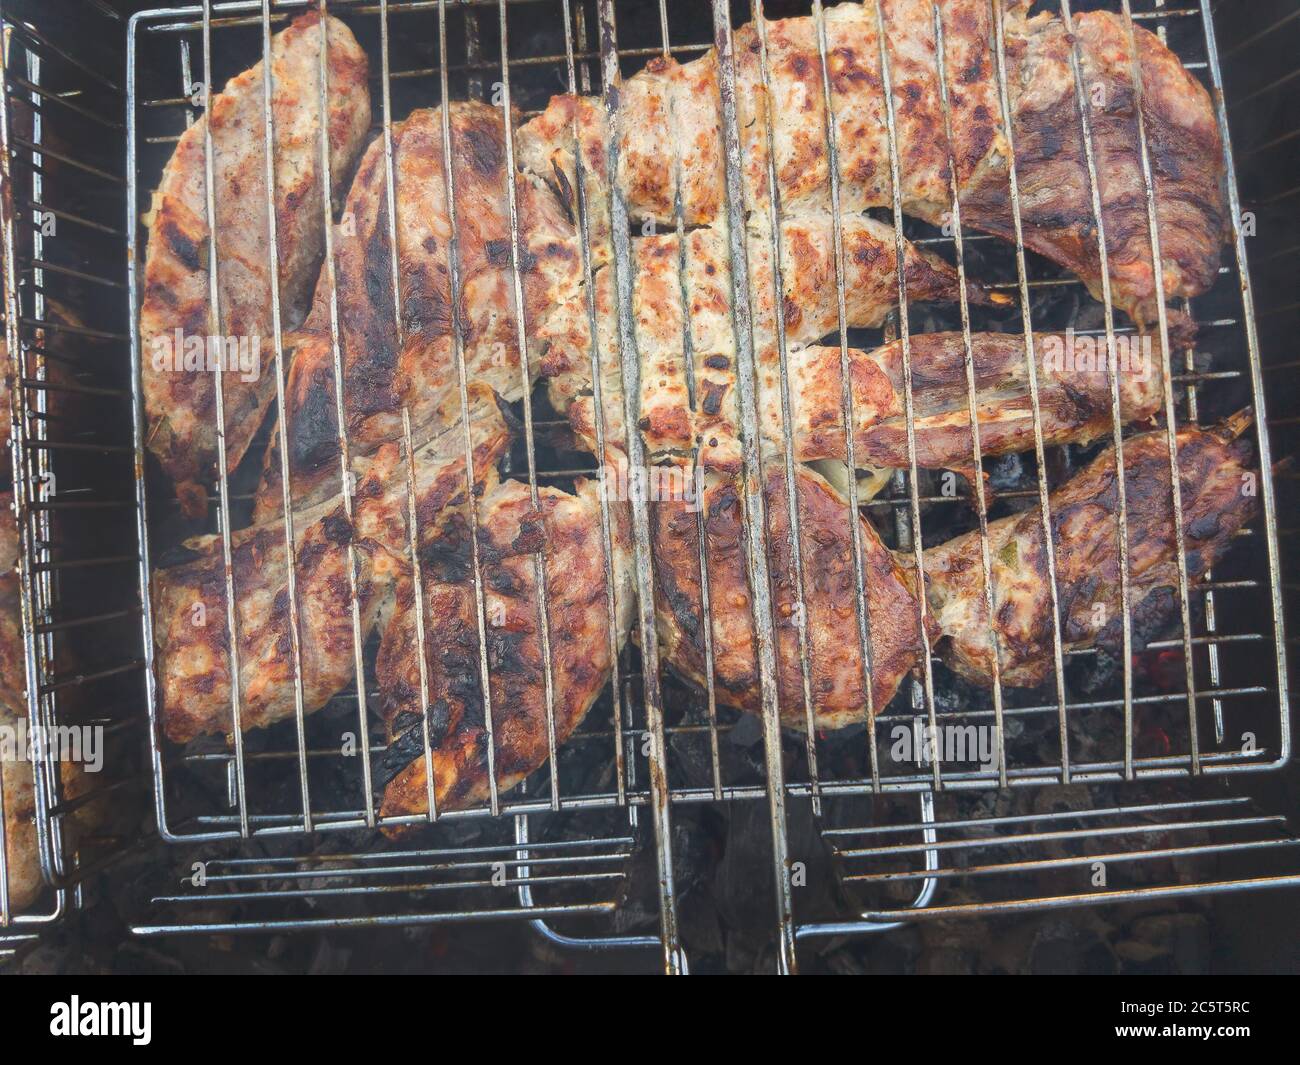 Délicieux kebab de poulet, grillé et doré, cuit au charbon de bois avec de  la fumée Photo Stock - Alamy